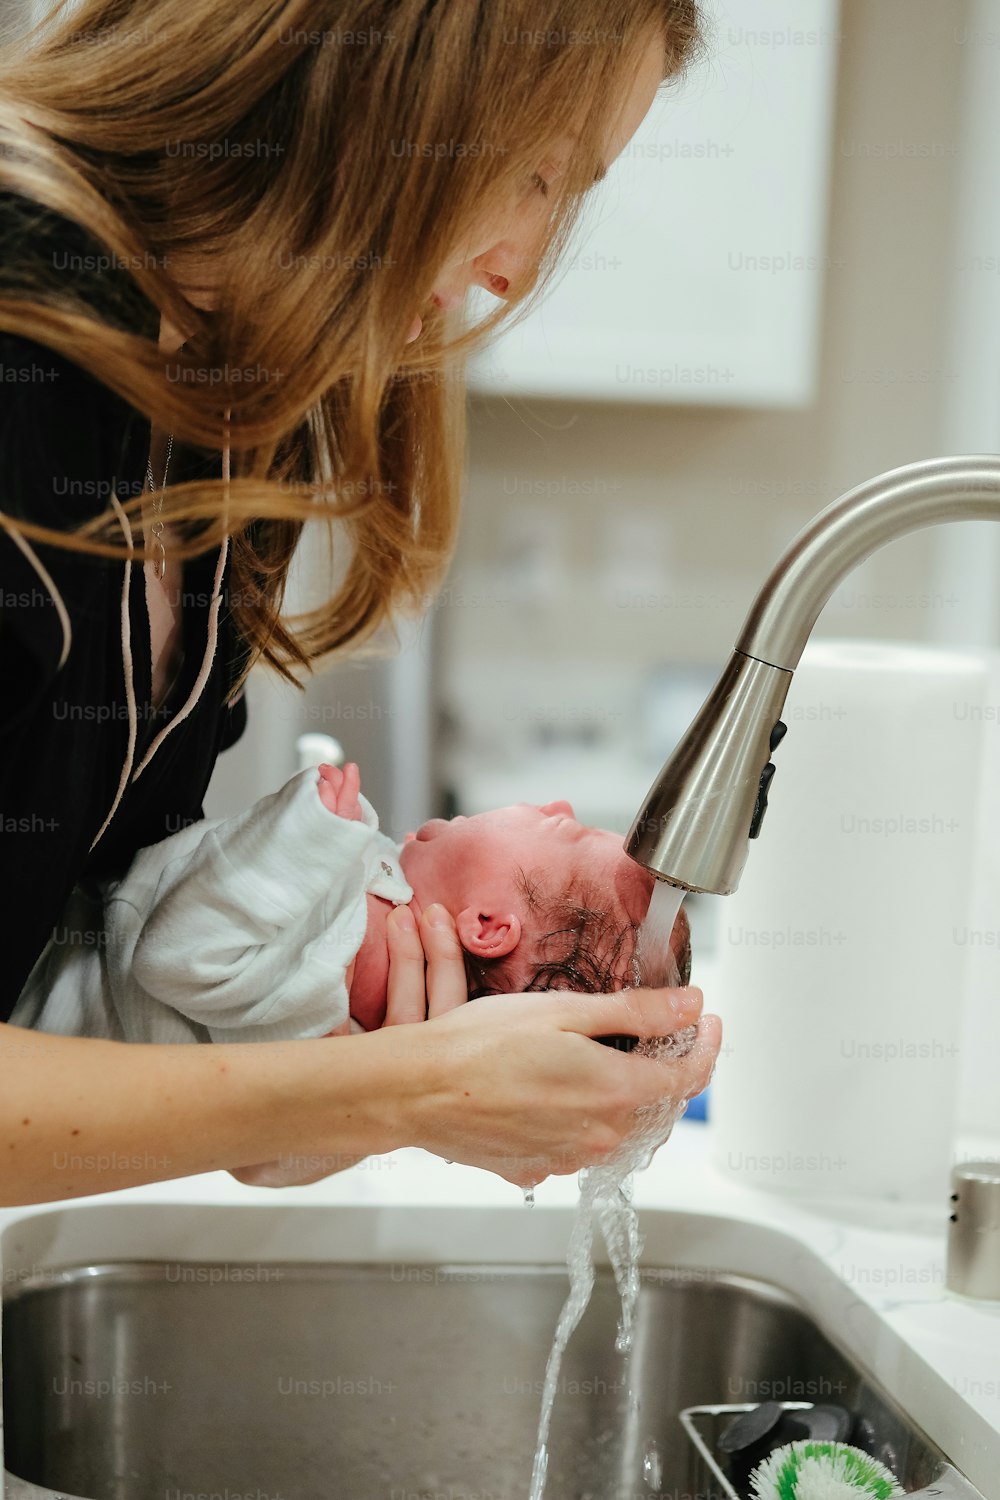 Eine Frau wäscht ein Baby in einem Waschbecken